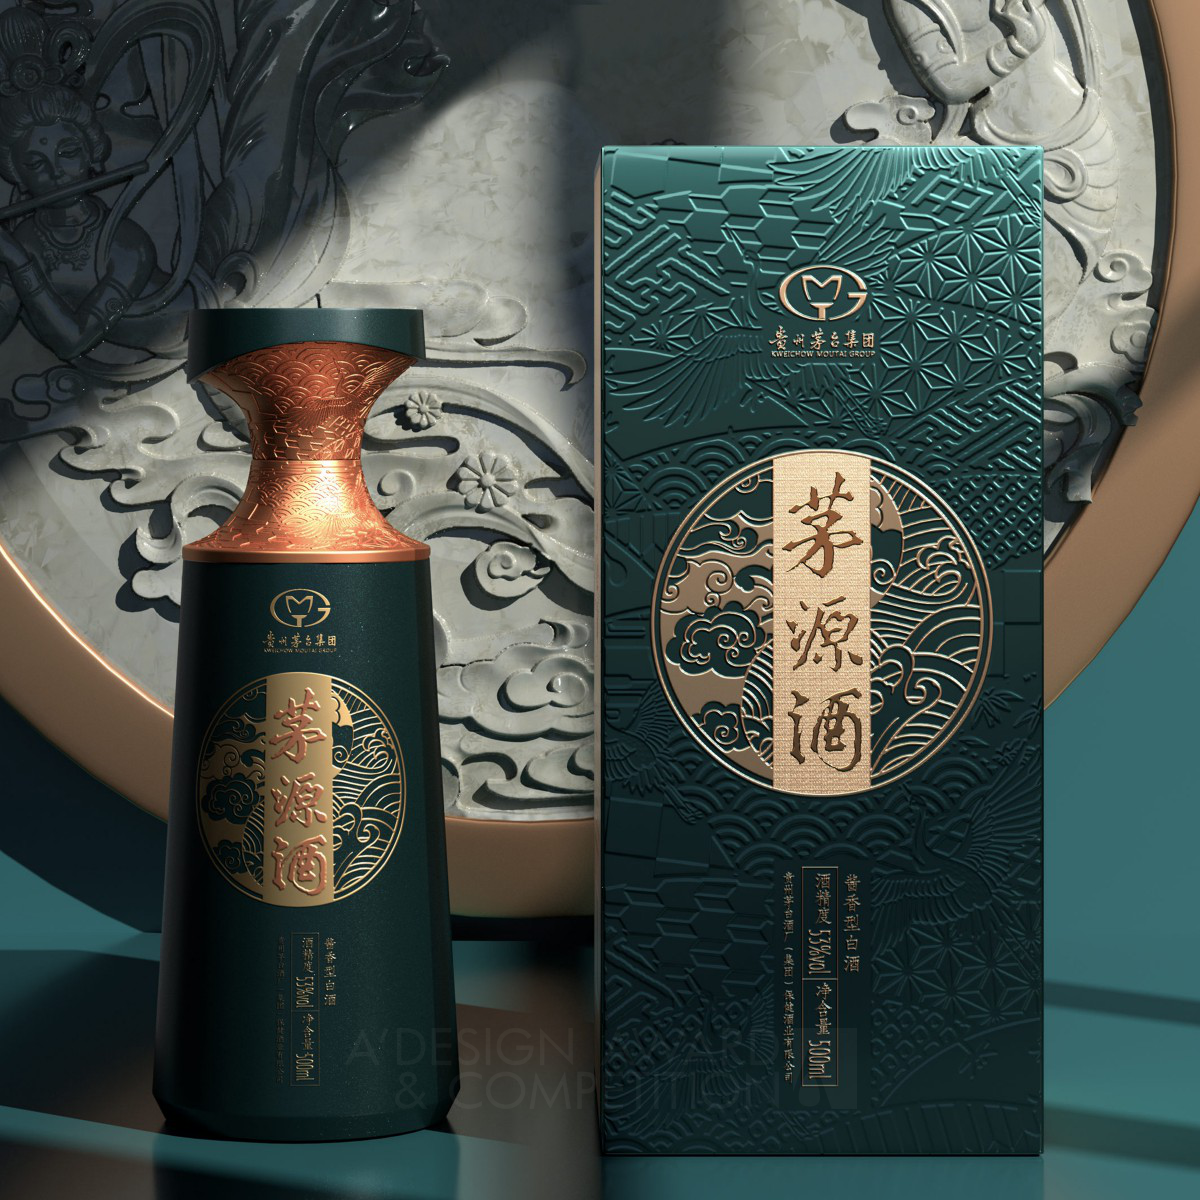 ماويوان جيو: تعبير فني عن الثقافة الصينية التقليدية في تصميم عبوات الخمور